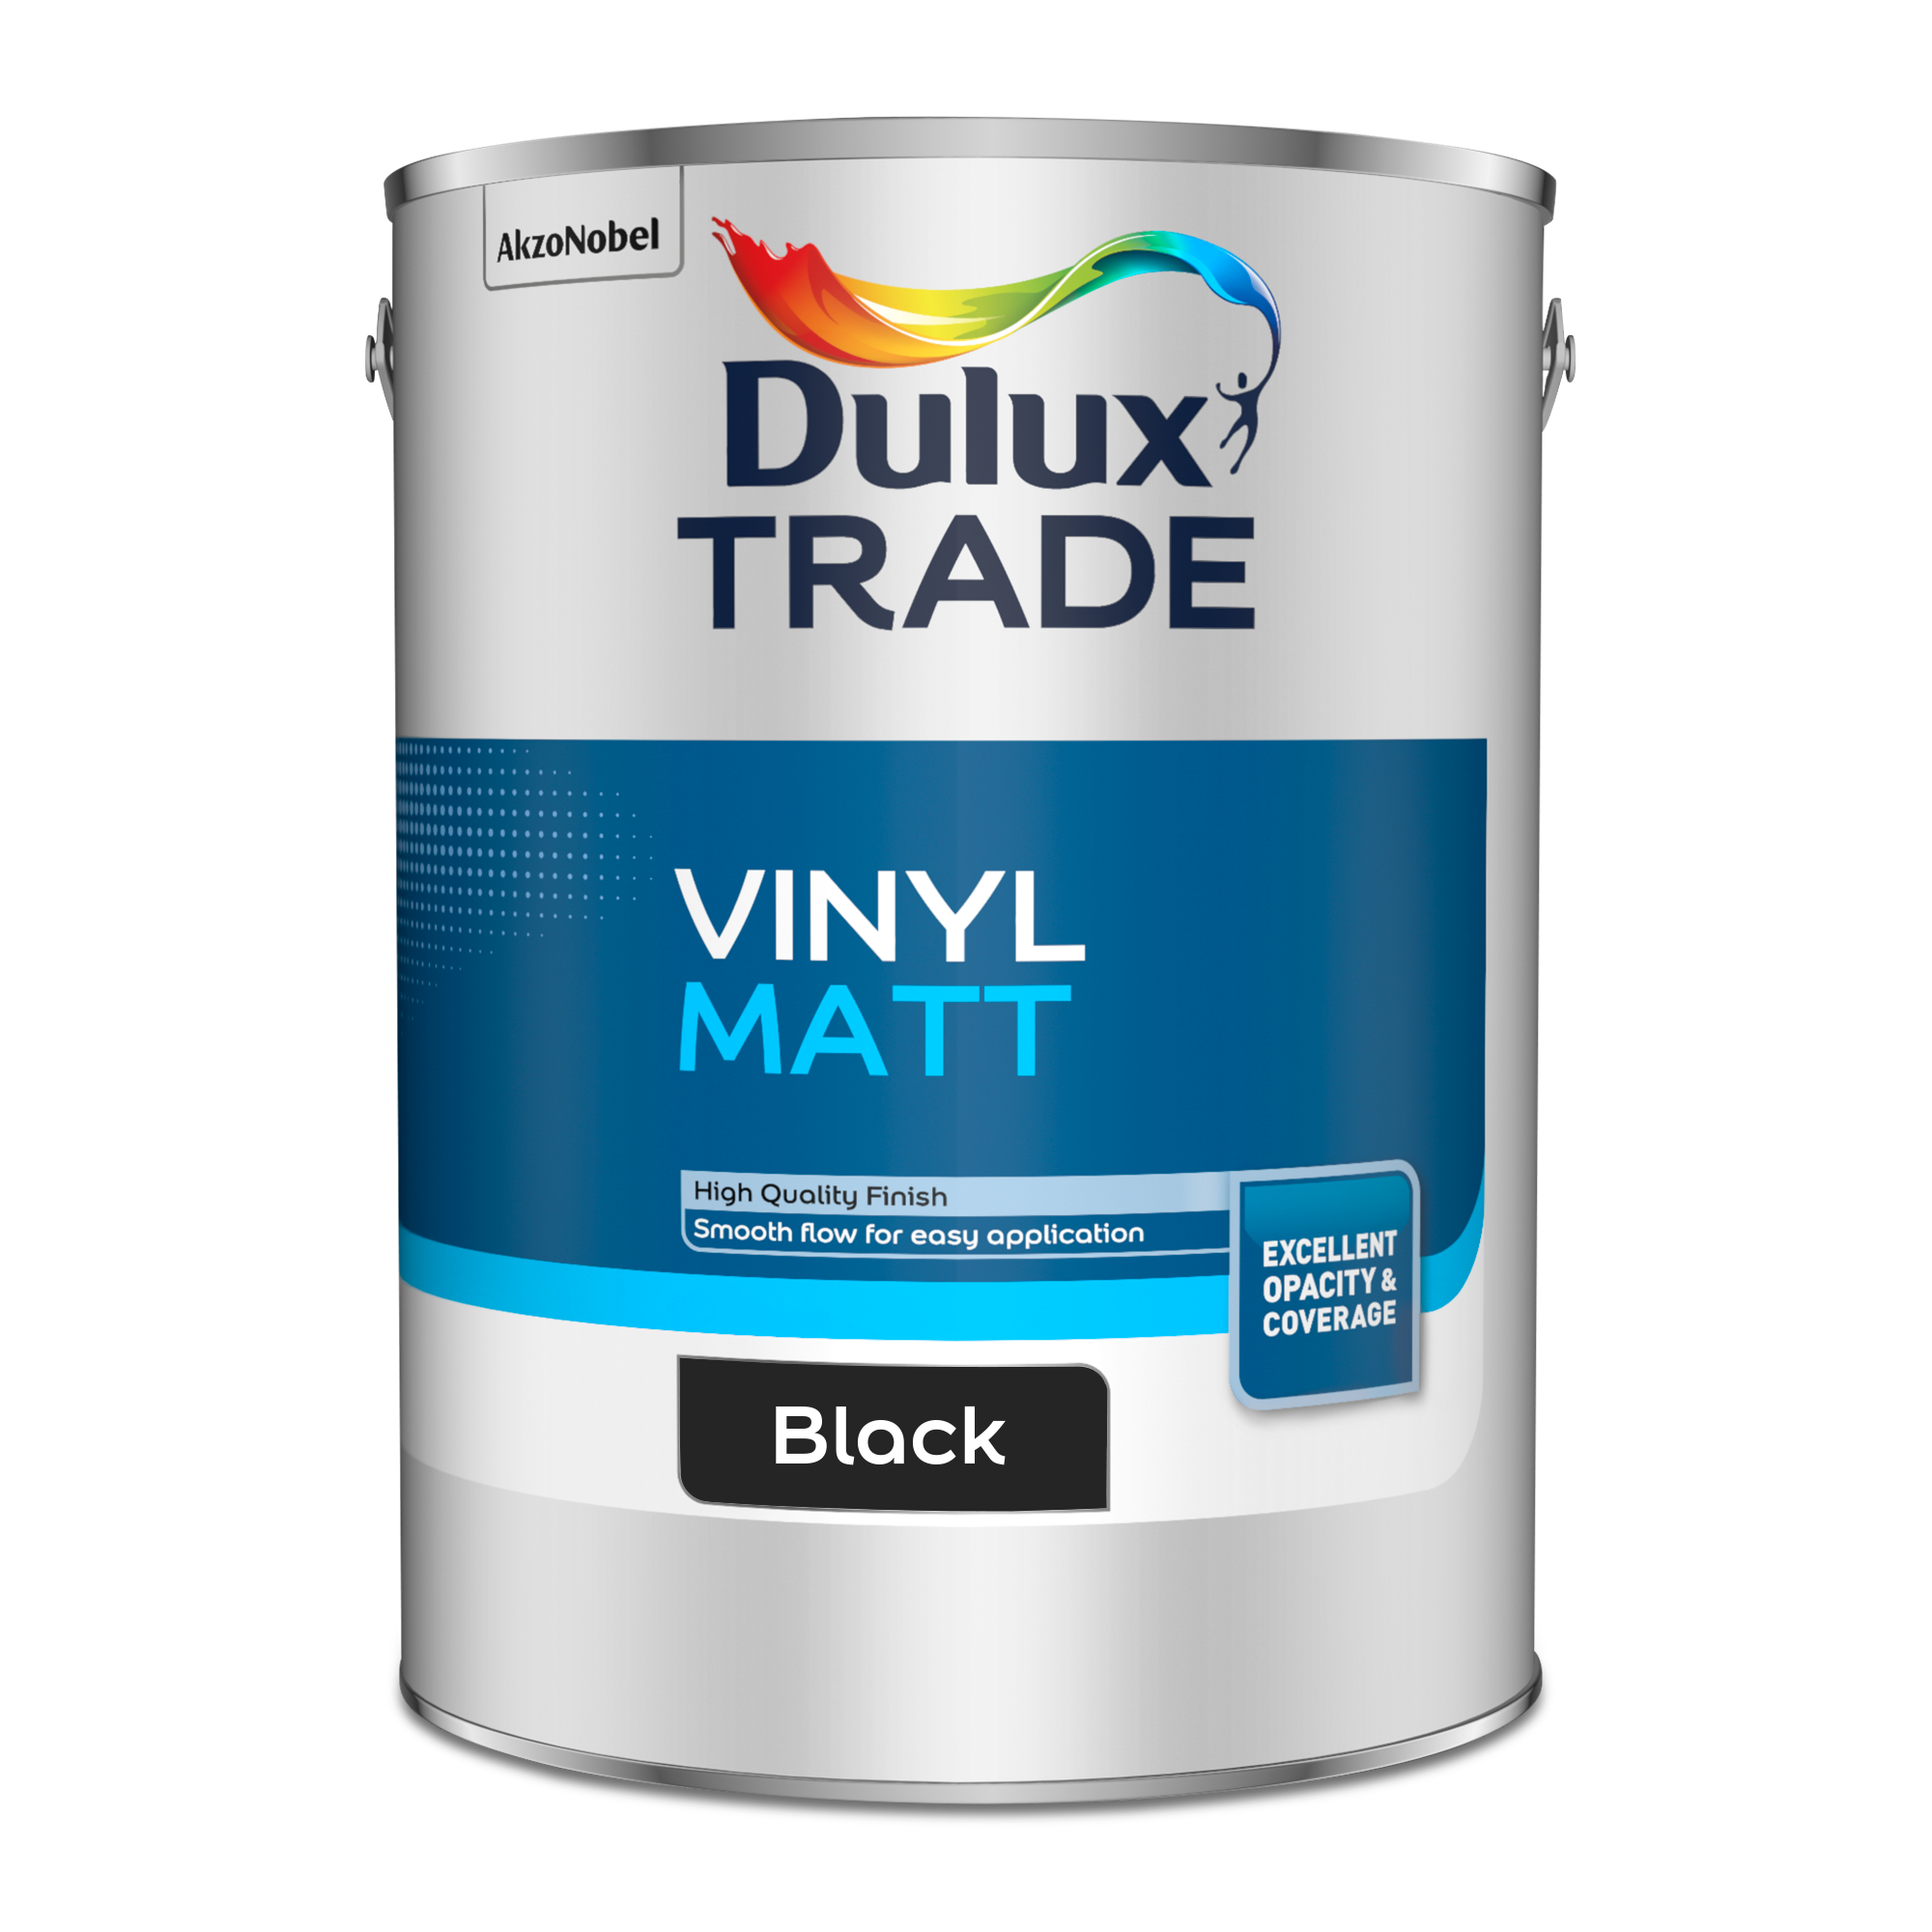 Dulux Trade Vinyl Matt - Black